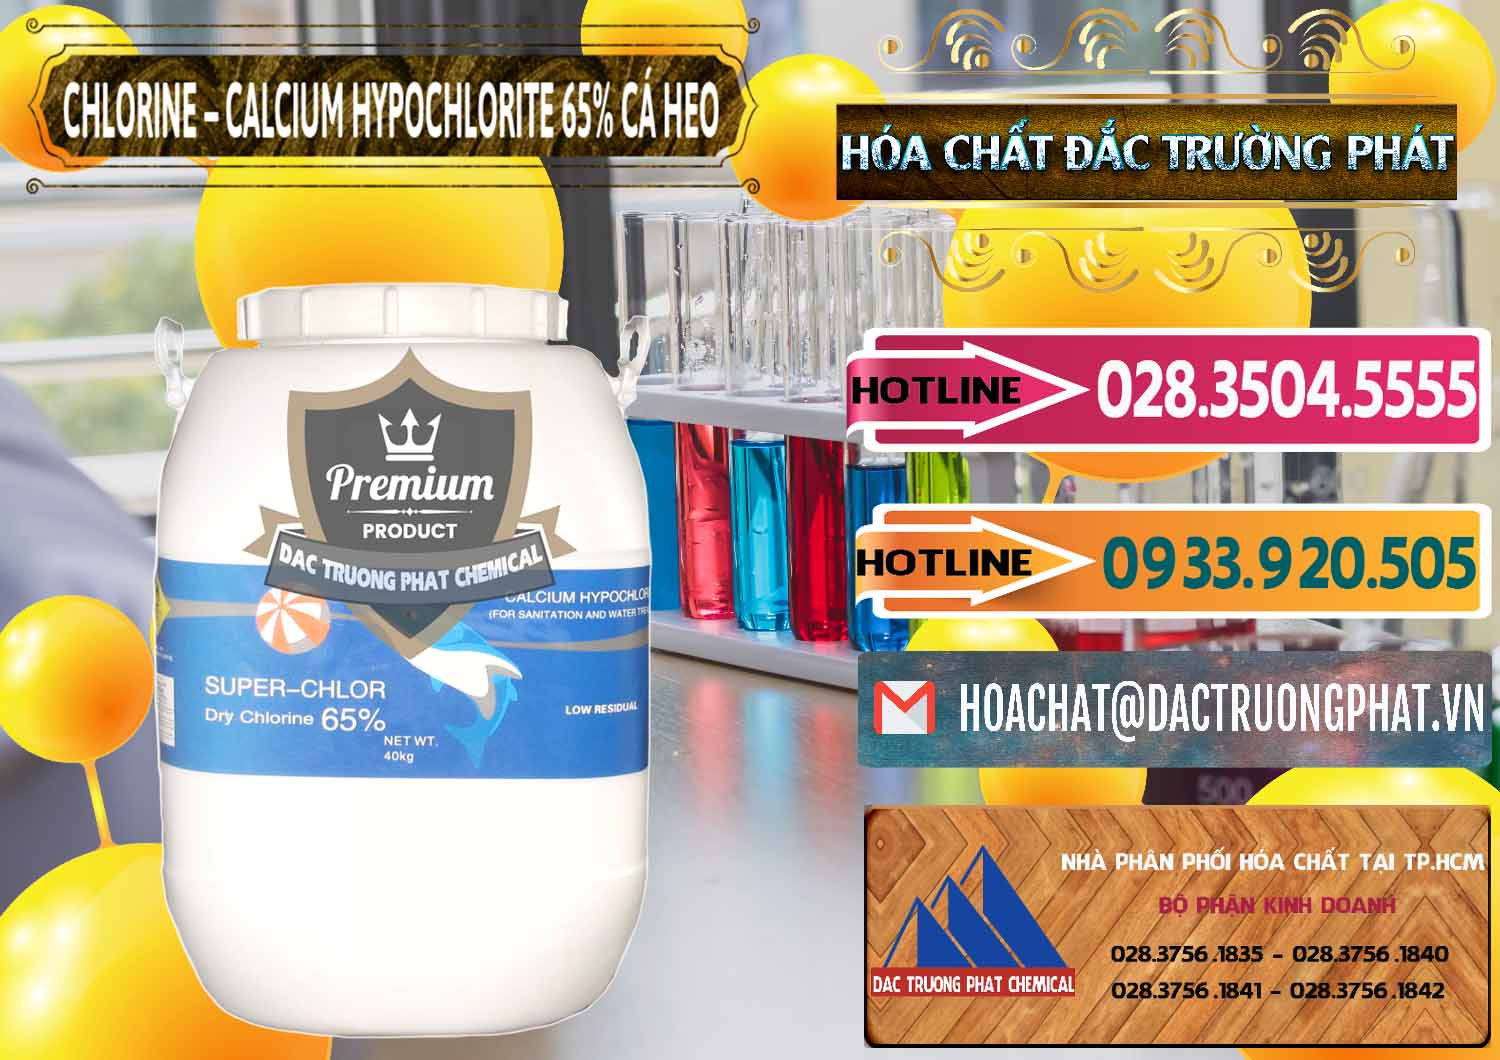 Cty chuyên cung cấp - bán Clorin - Chlorine Cá Heo 65% Trung Quốc China - 0053 - Công ty chuyên phân phối - bán hóa chất tại TP.HCM - dactruongphat.vn